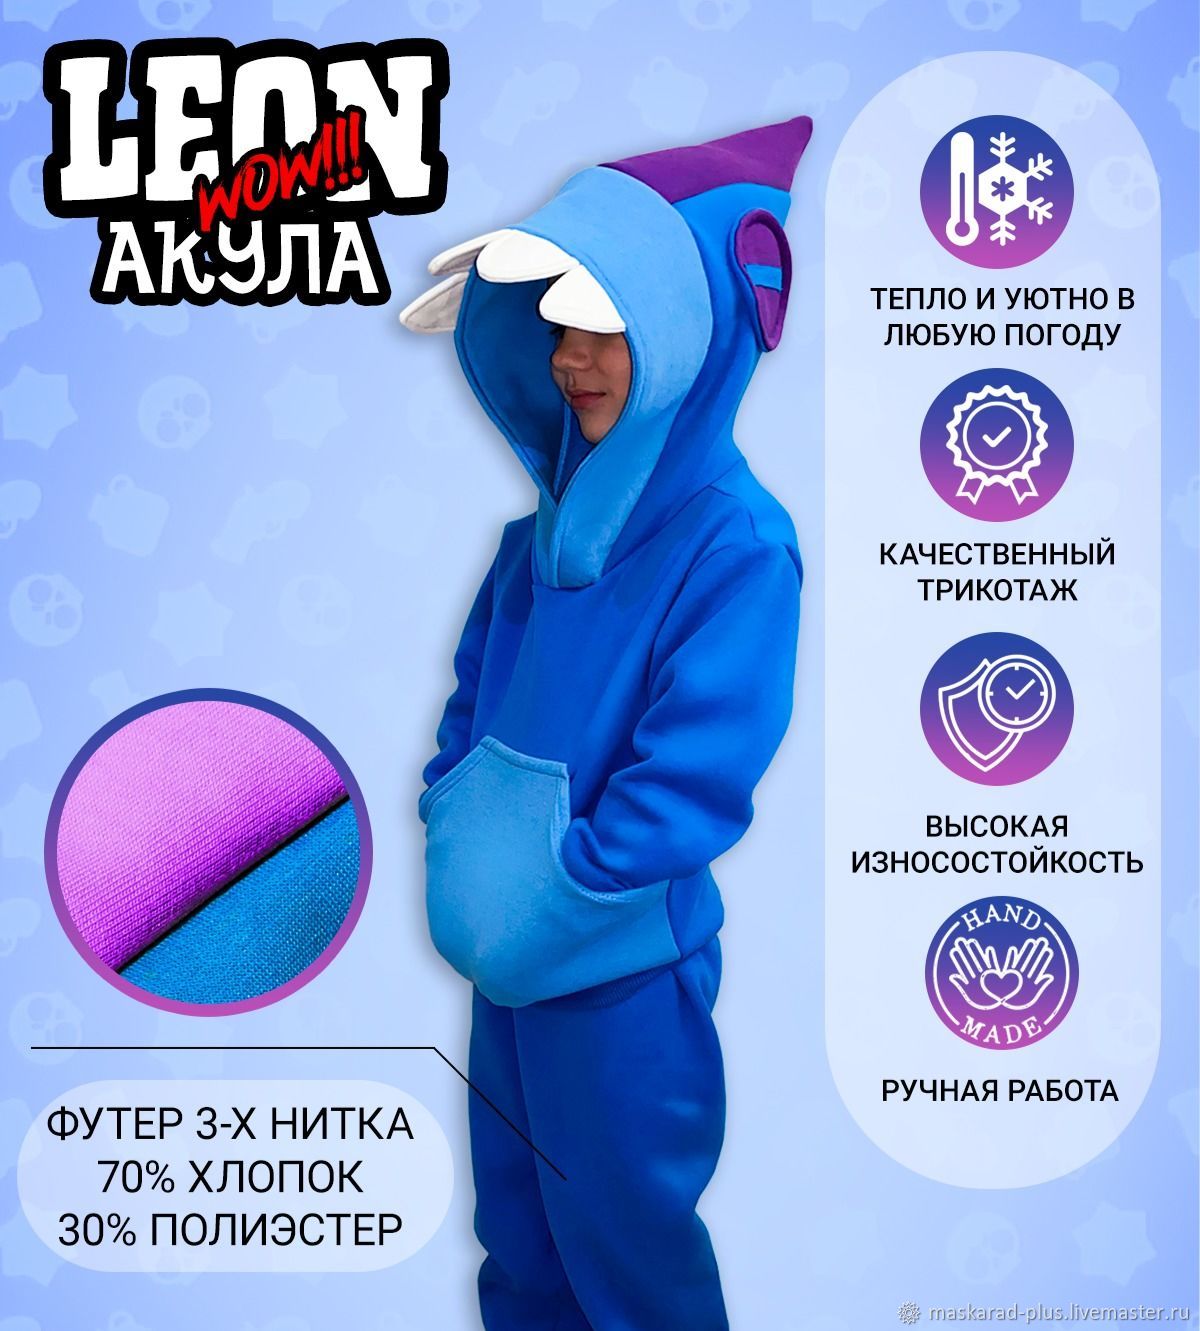 Леон из Браво старс в костюме акулы